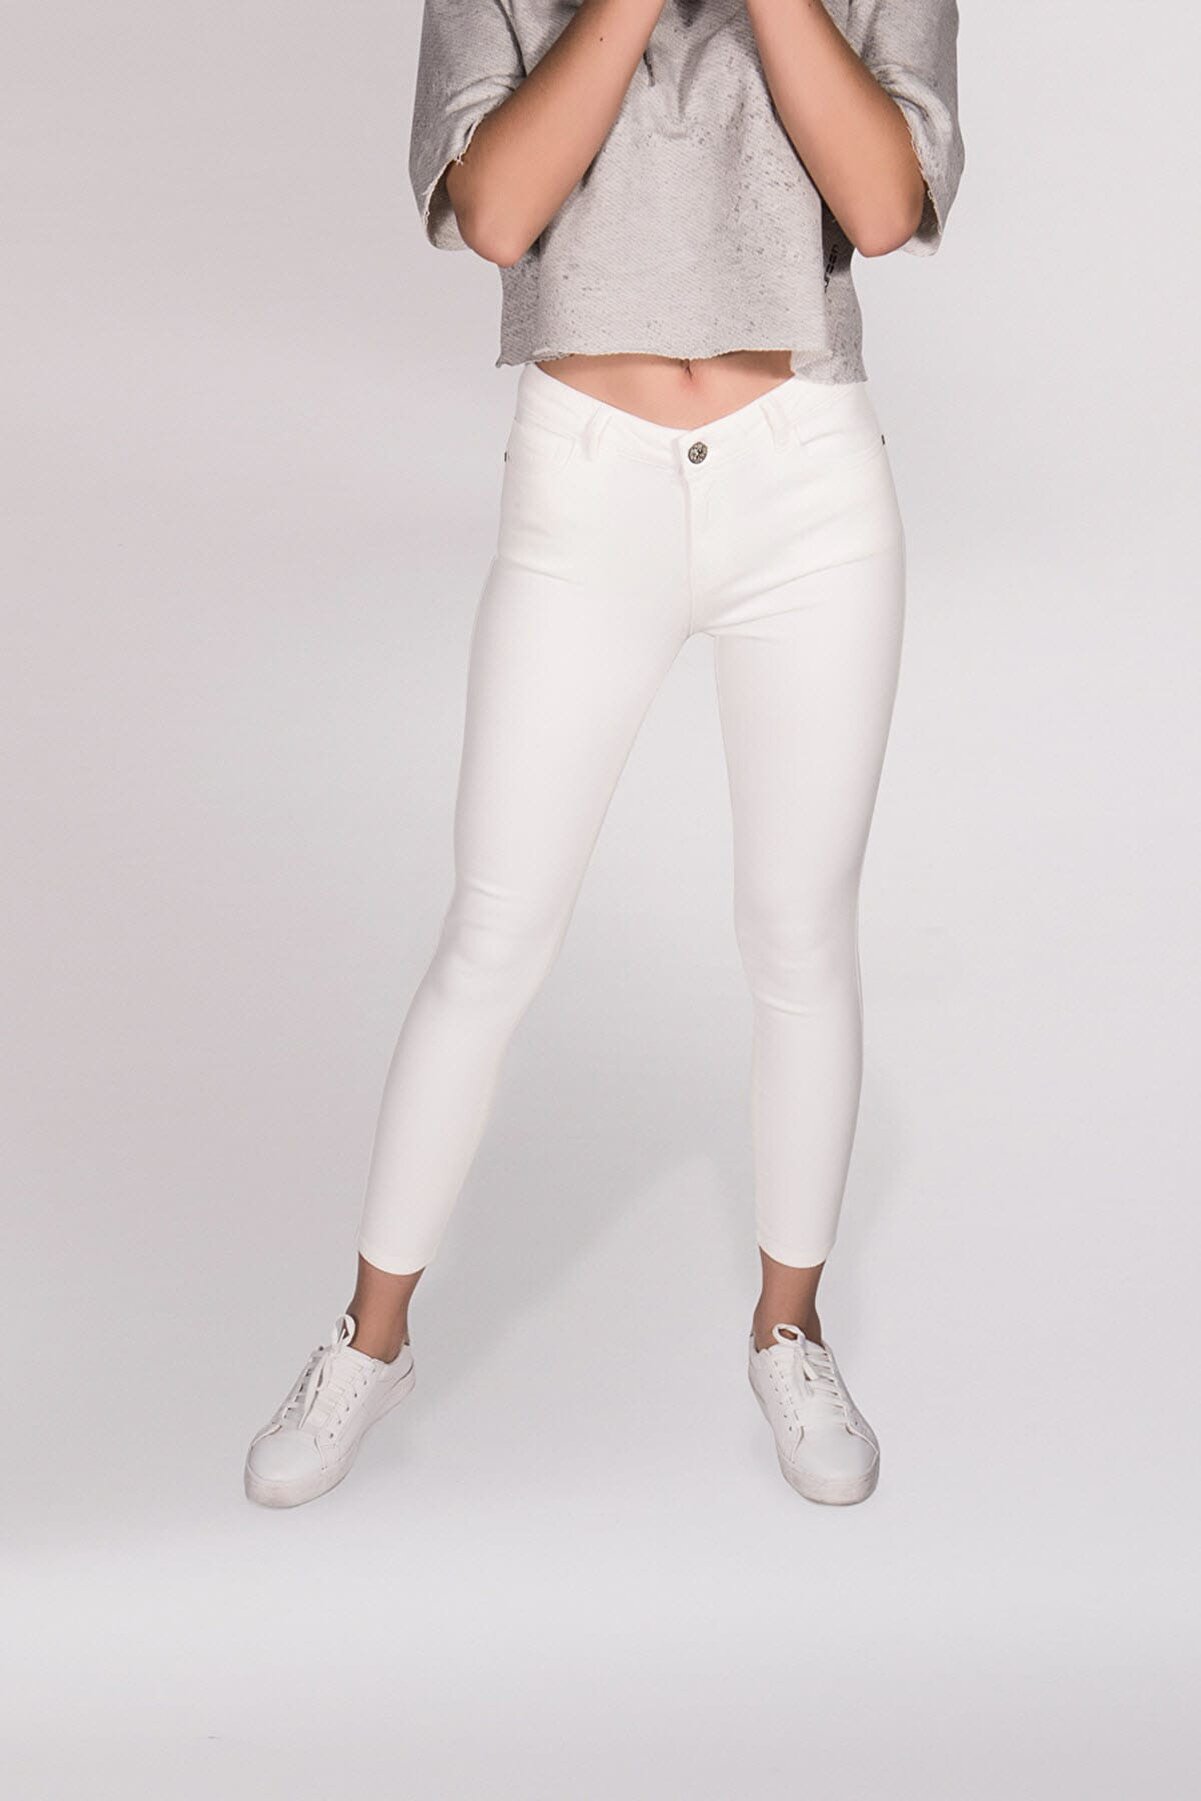 Maccaroon Kadın Beyaz Pantolon